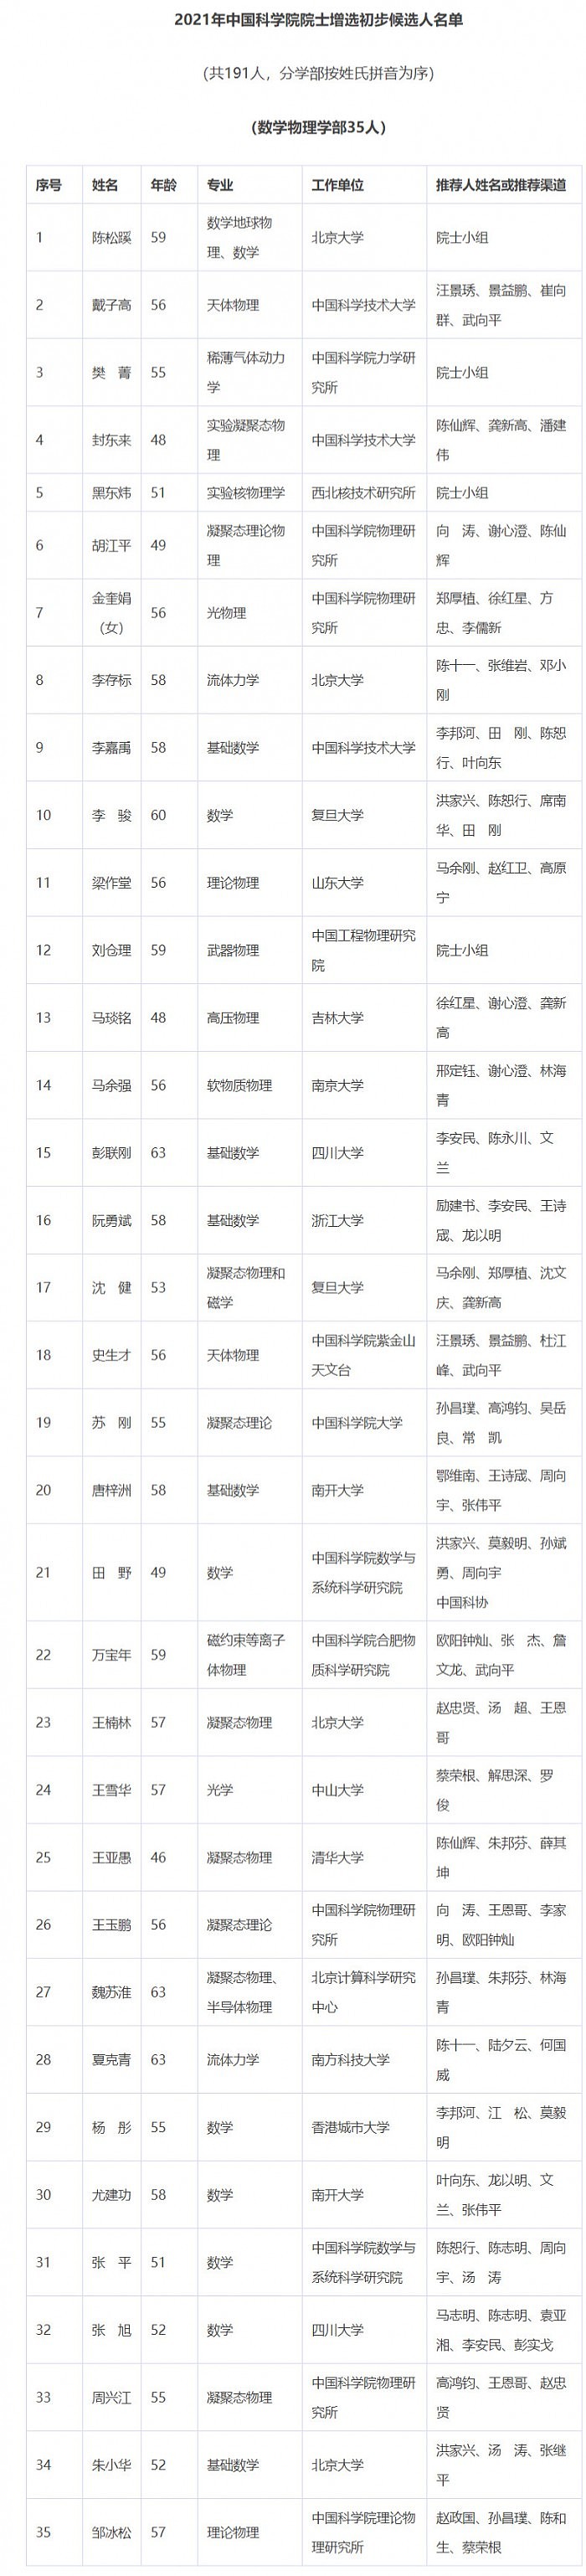 2021年中国科学院院士增选初步候选人名单公布 - 3